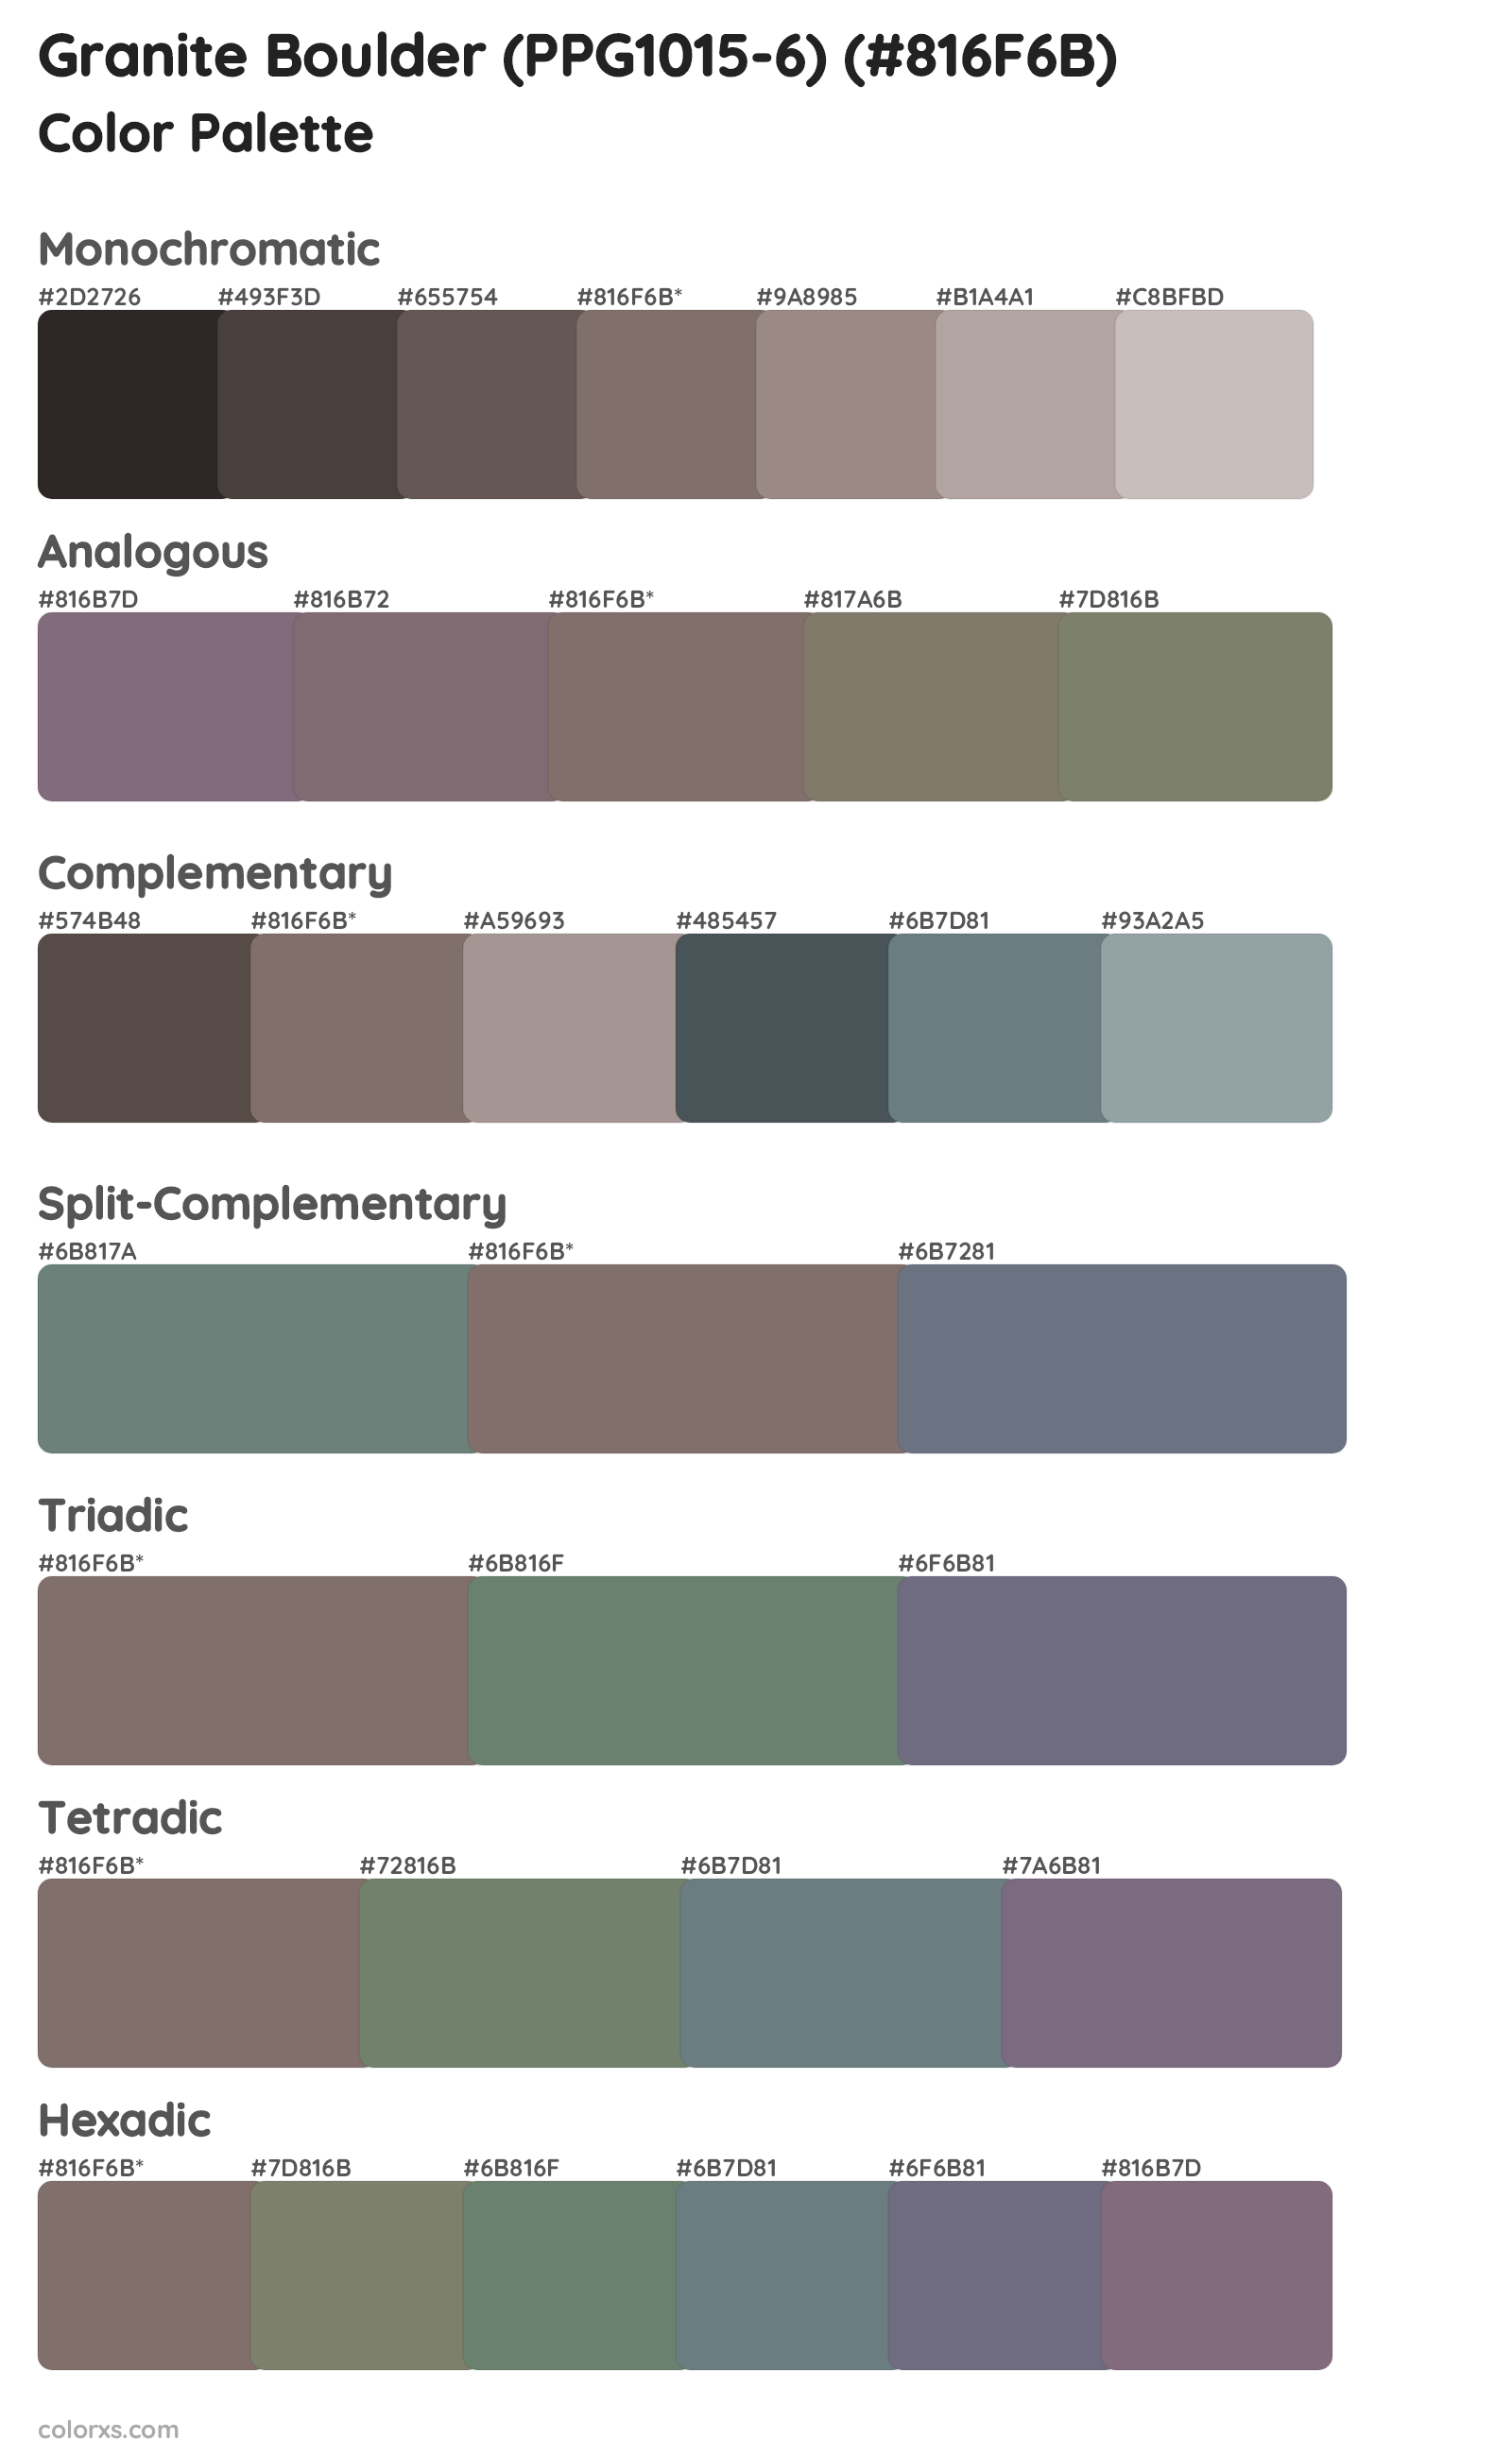 Granite Boulder (PPG1015-6) Color Scheme Palettes